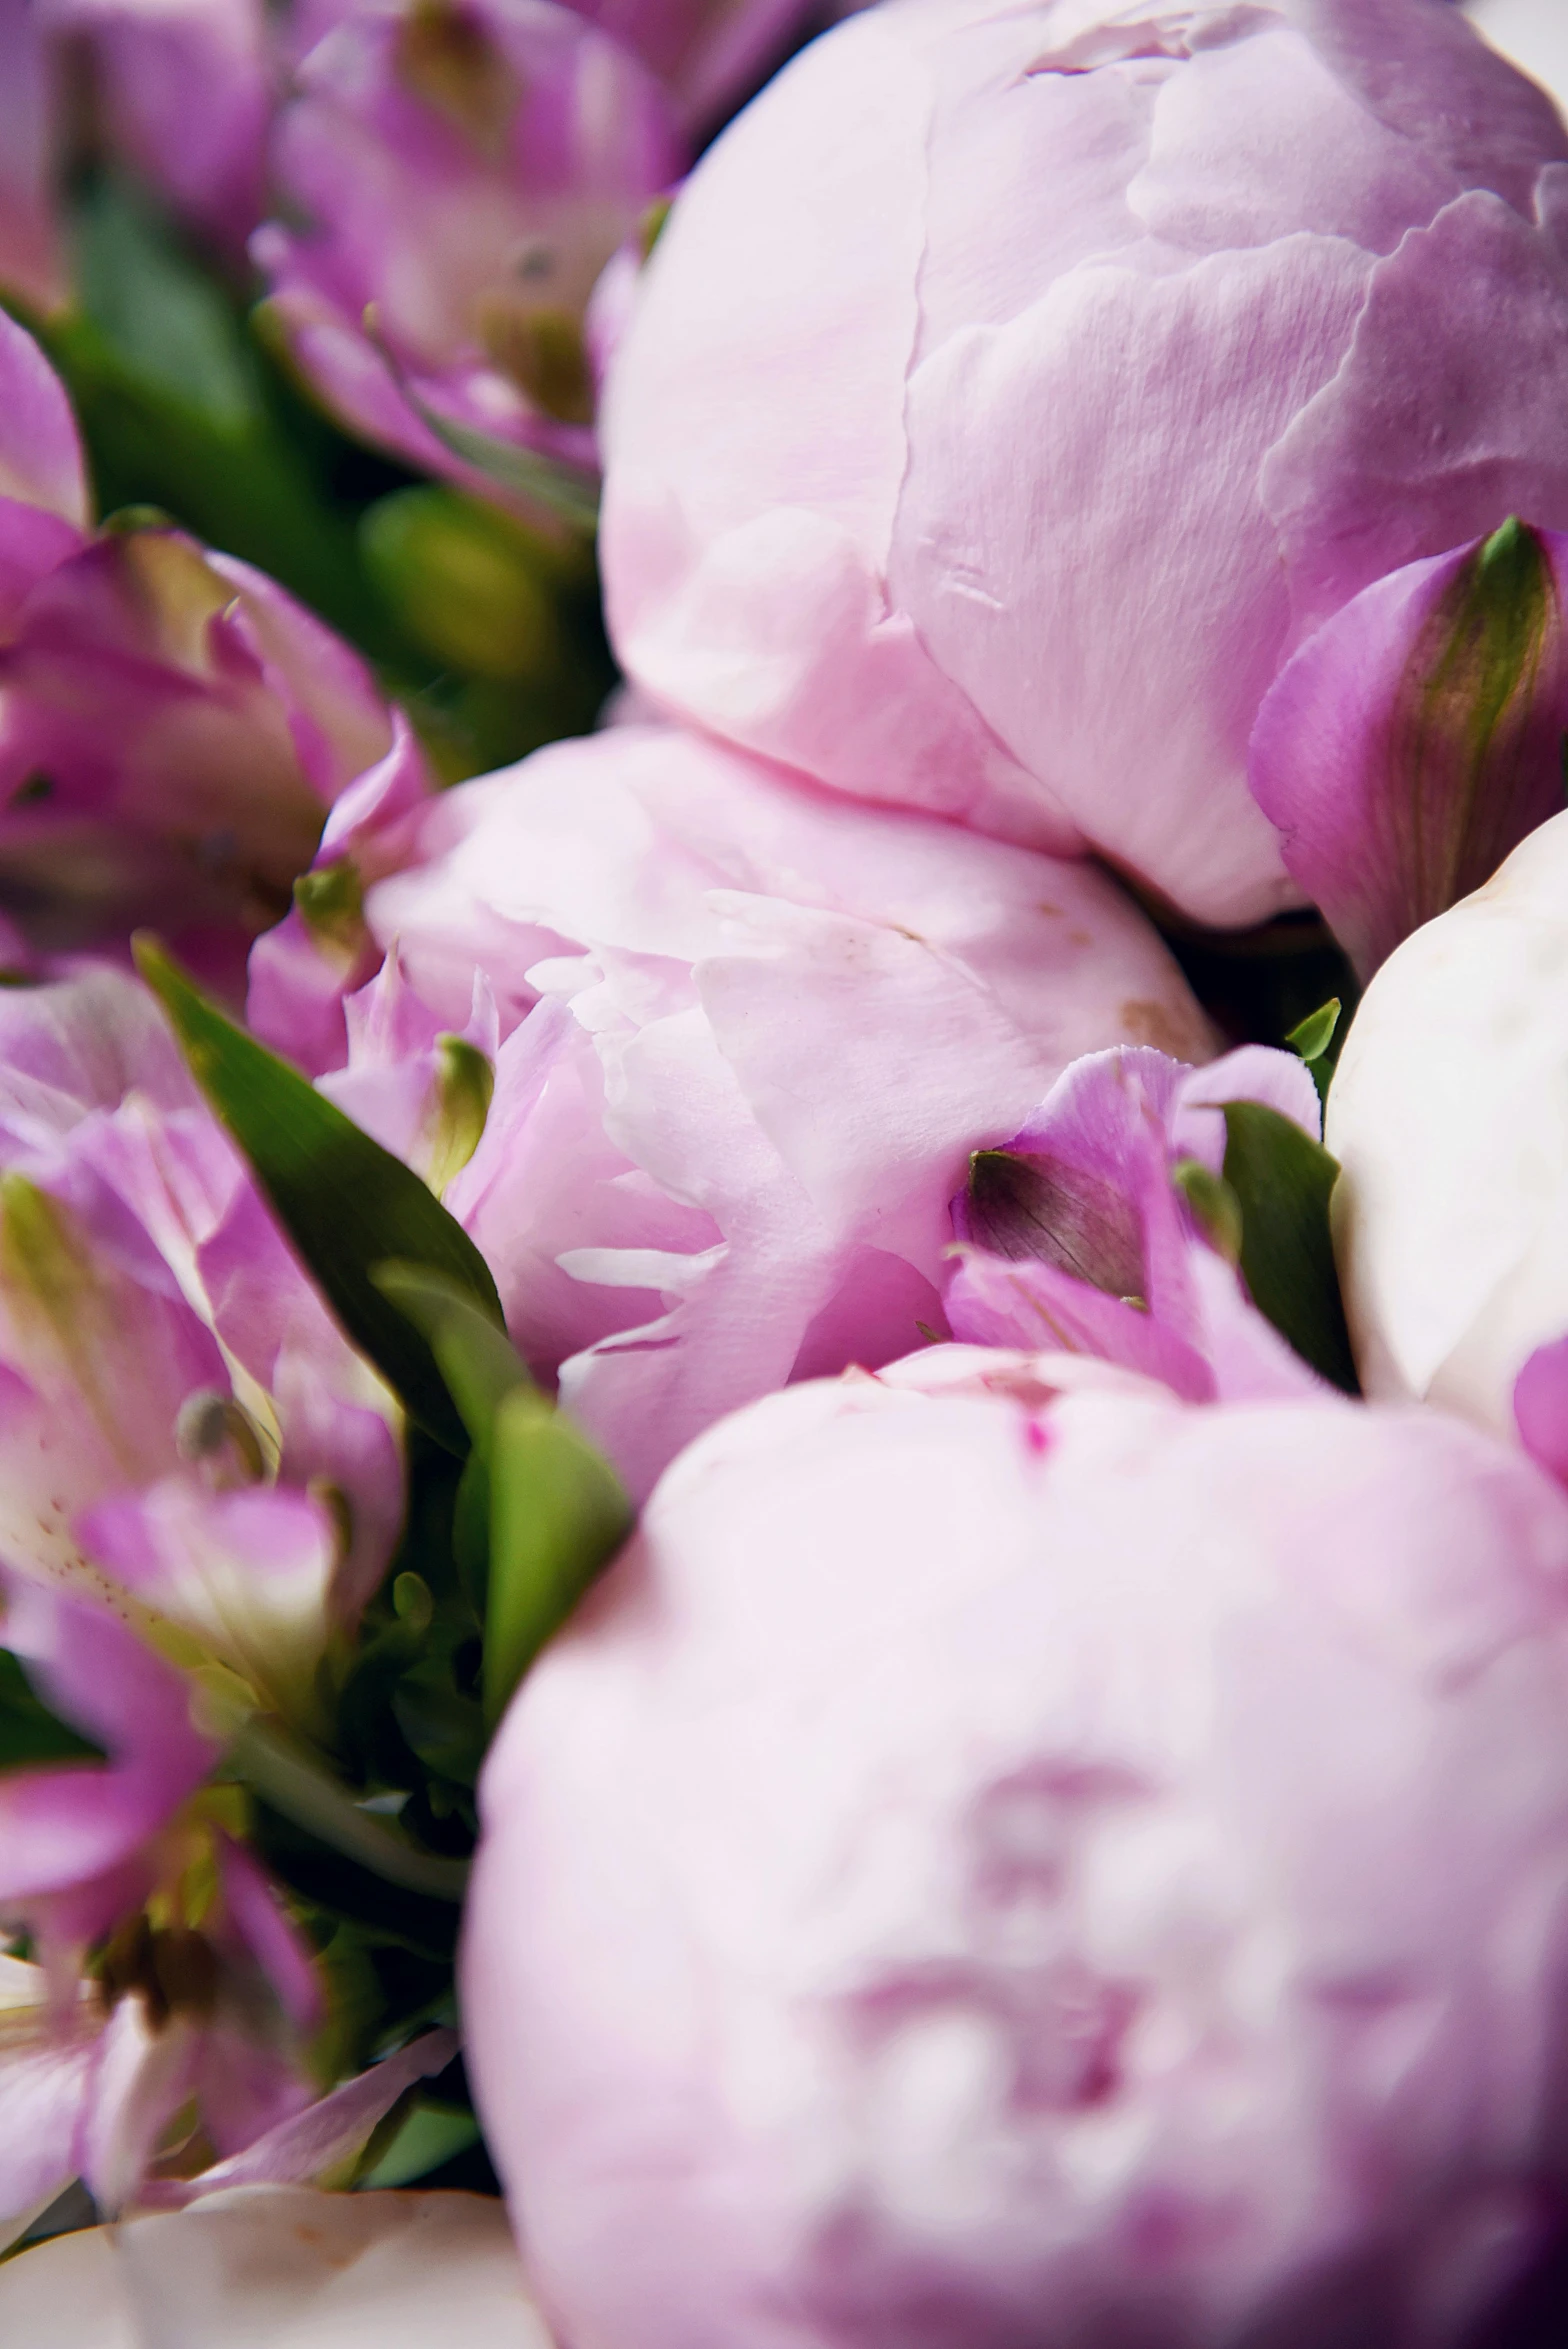 a close up of a bunch of pink flowers, award-winning crisp details”, light purple, peonies, artisanal art